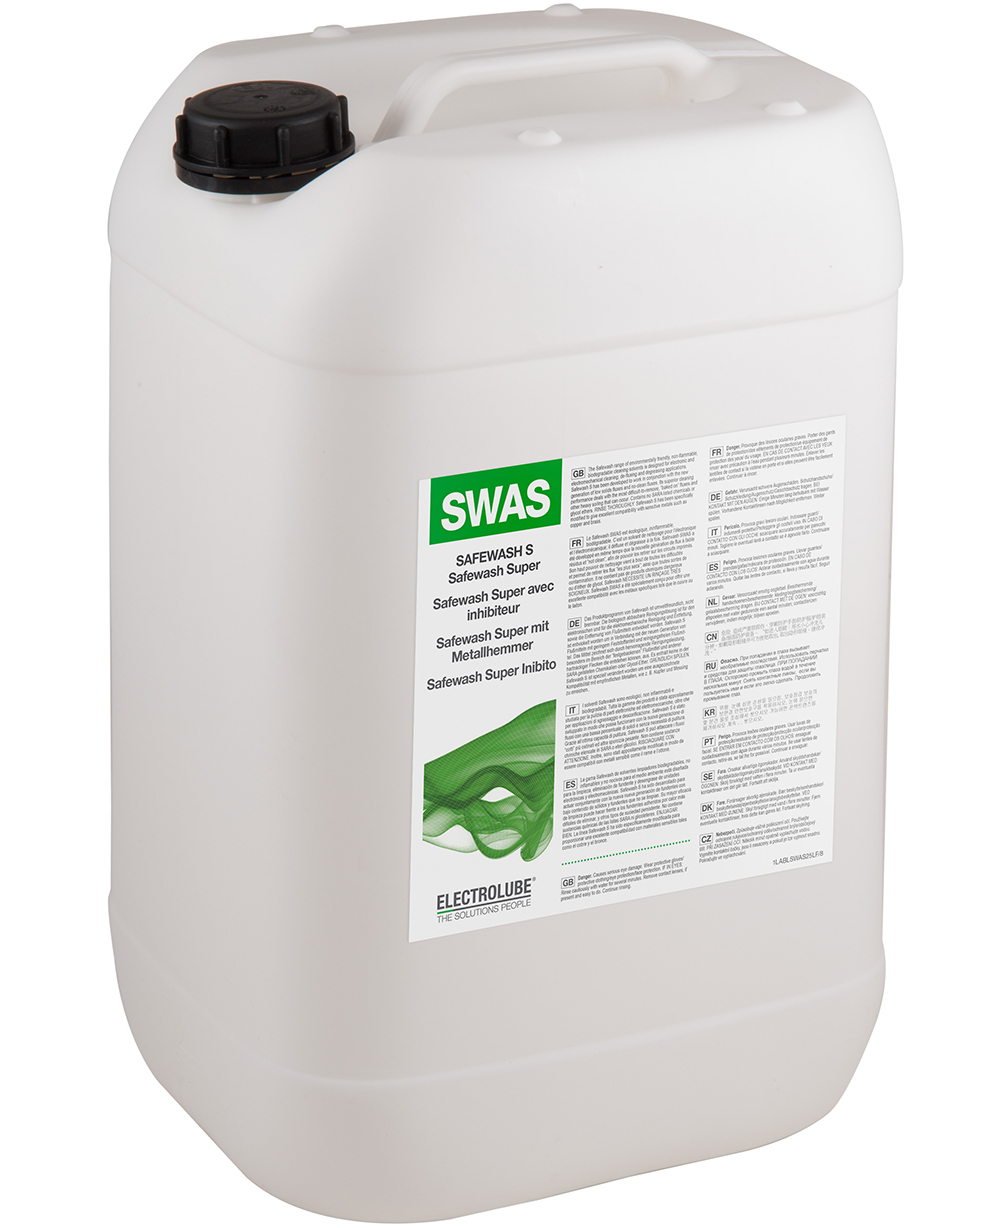 SWAS25L, cредство для отмывки на водной основе 25л